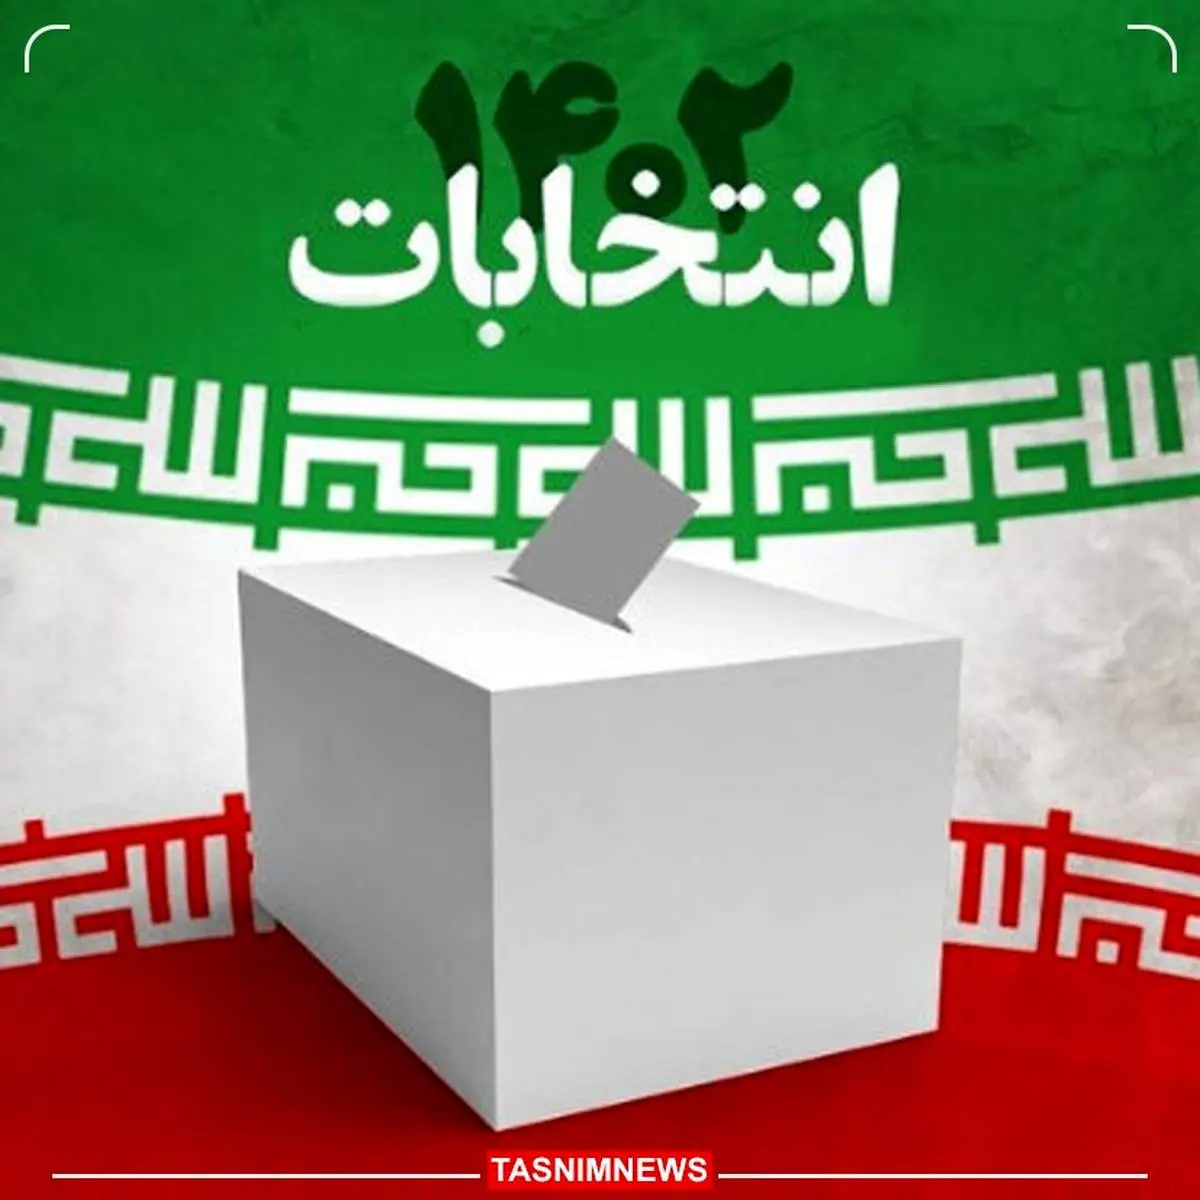 نمایندگان مجلس در استان فارس مشخص شدند |  نتایج انتخابات ۱۴۰۲ مجلس در استان فارس را بدانید